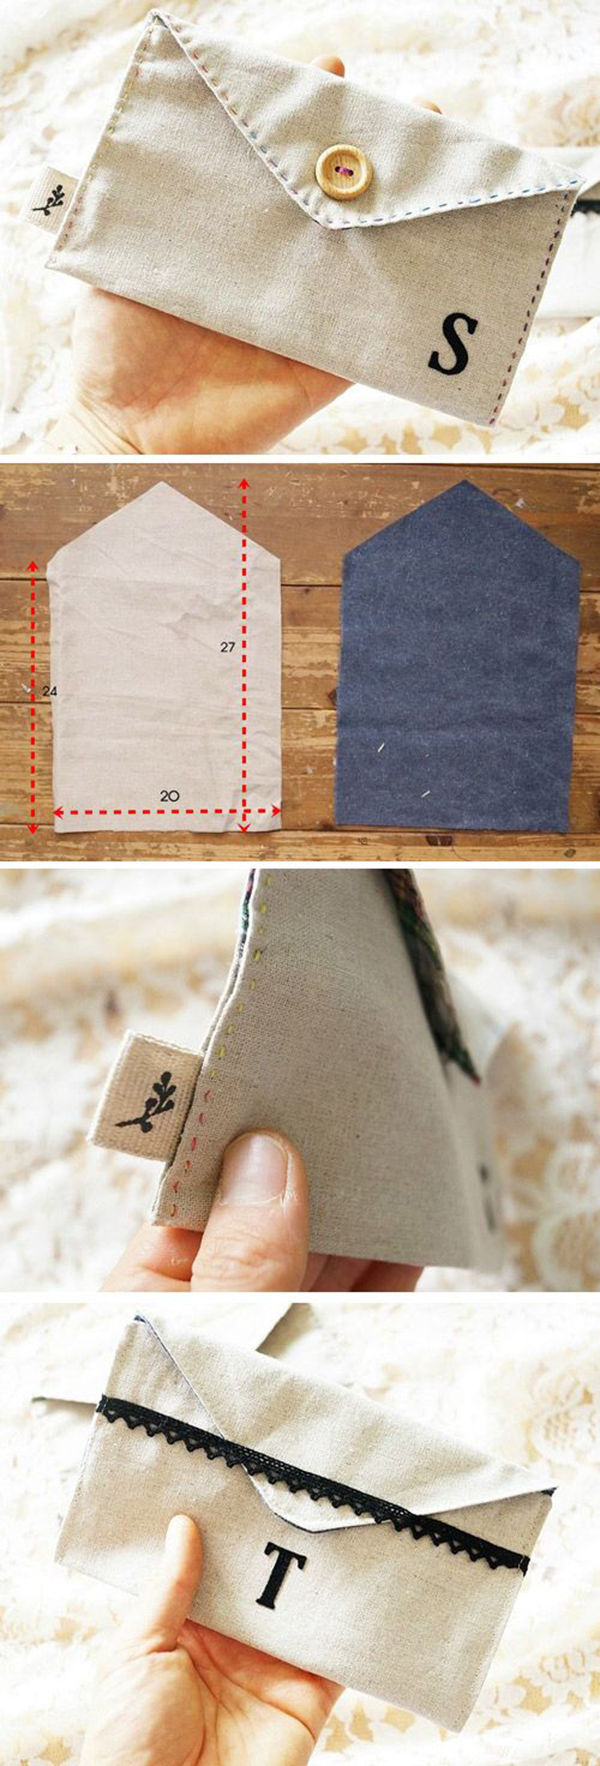 Текстильно! 30 идей для упаковки из ткани точно, только, эффектно, Исторически, делали, джинсы, просто, нетЗдесь, Почему, рубашка, вообще, пошла, здесь, смотрятсяА, замечательно, ткани, простой, штампы, справитсяВсетаки, давайте